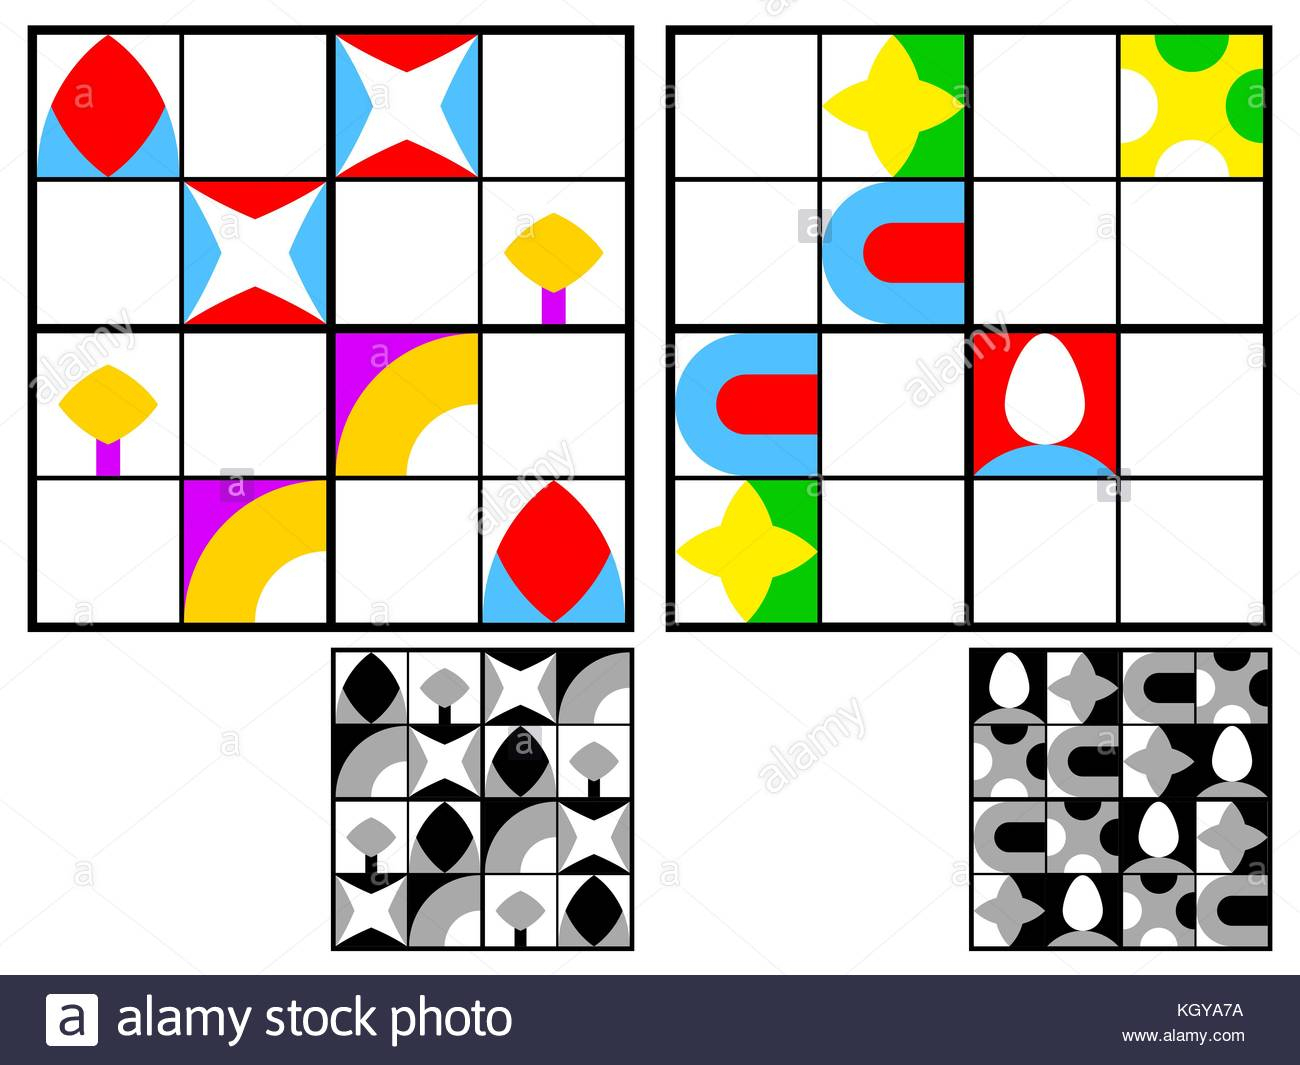 Jeu De Sudoku Pour Les Enfants Avec Des Images Géométriques concernant Sudoku Pour Enfant